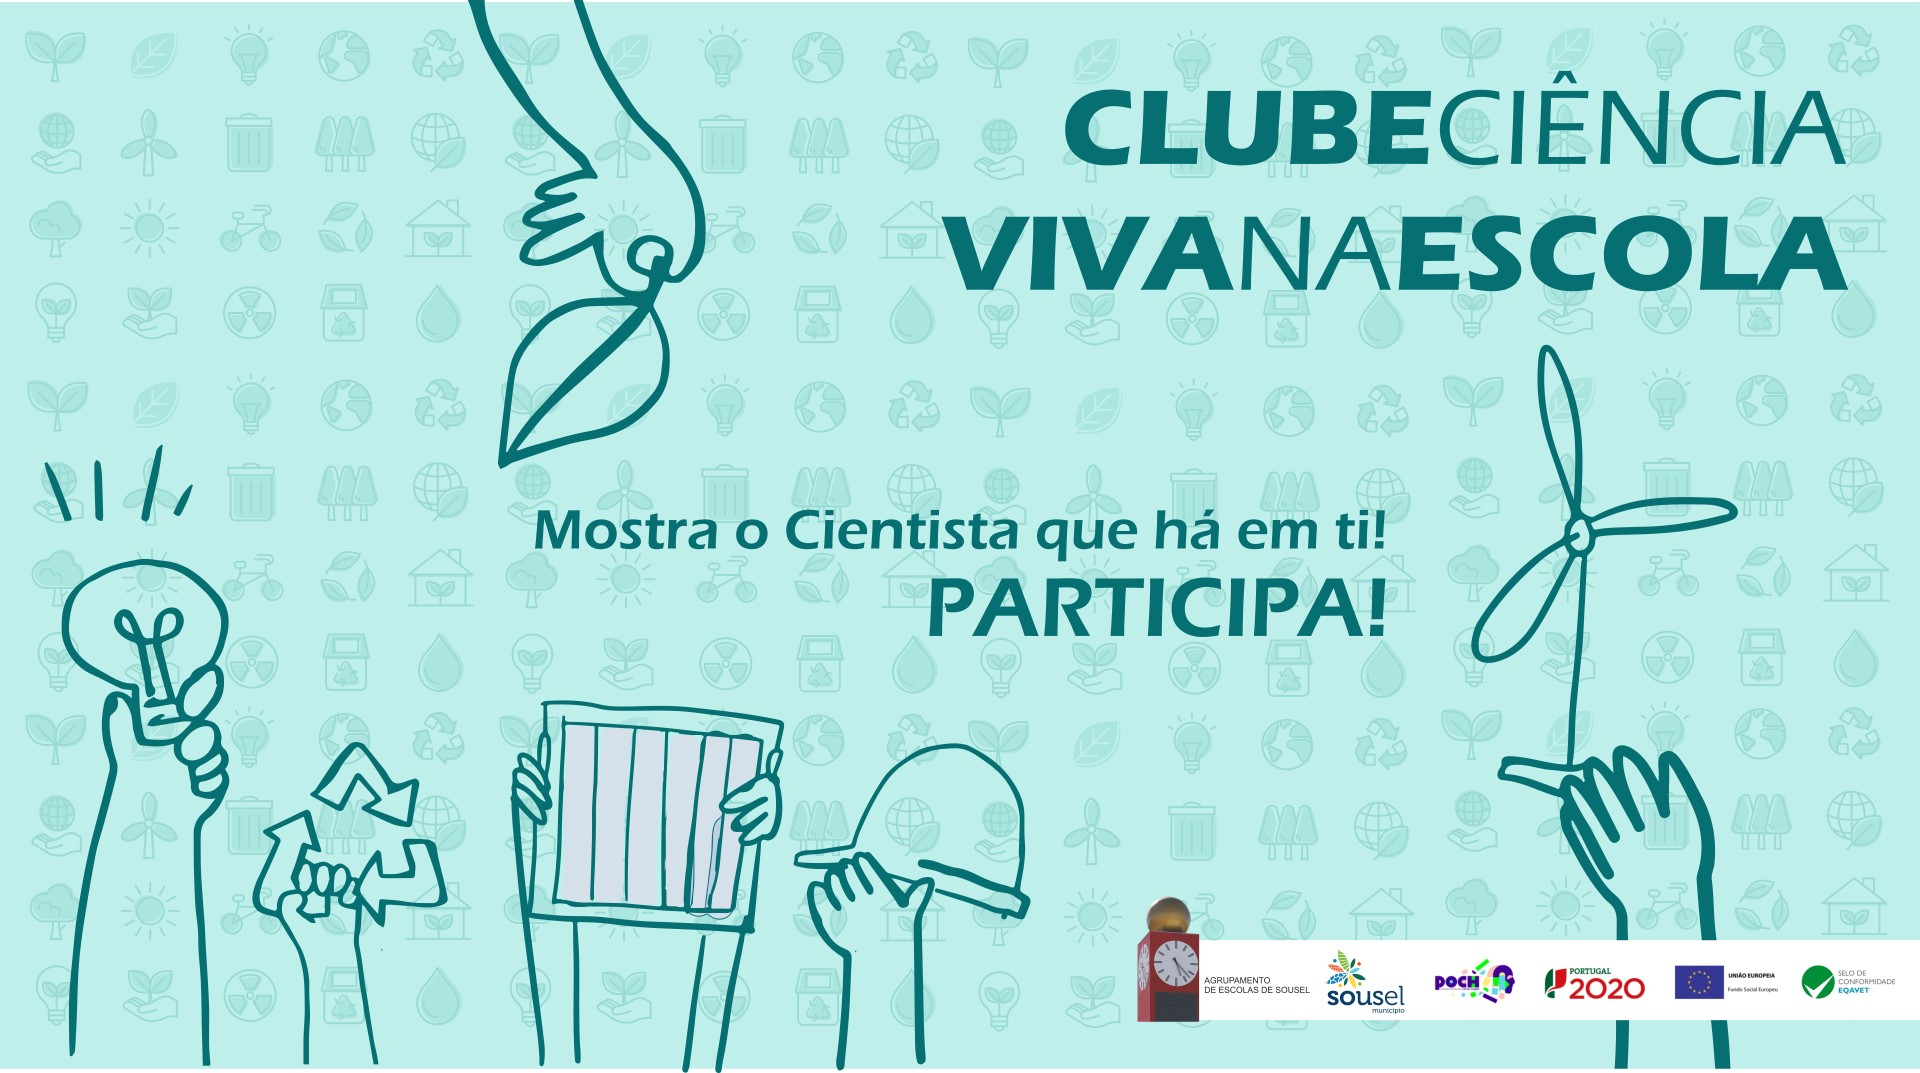 Clube Ciência Viva na Escola | Mostra o cientista que há em ti. Participa!